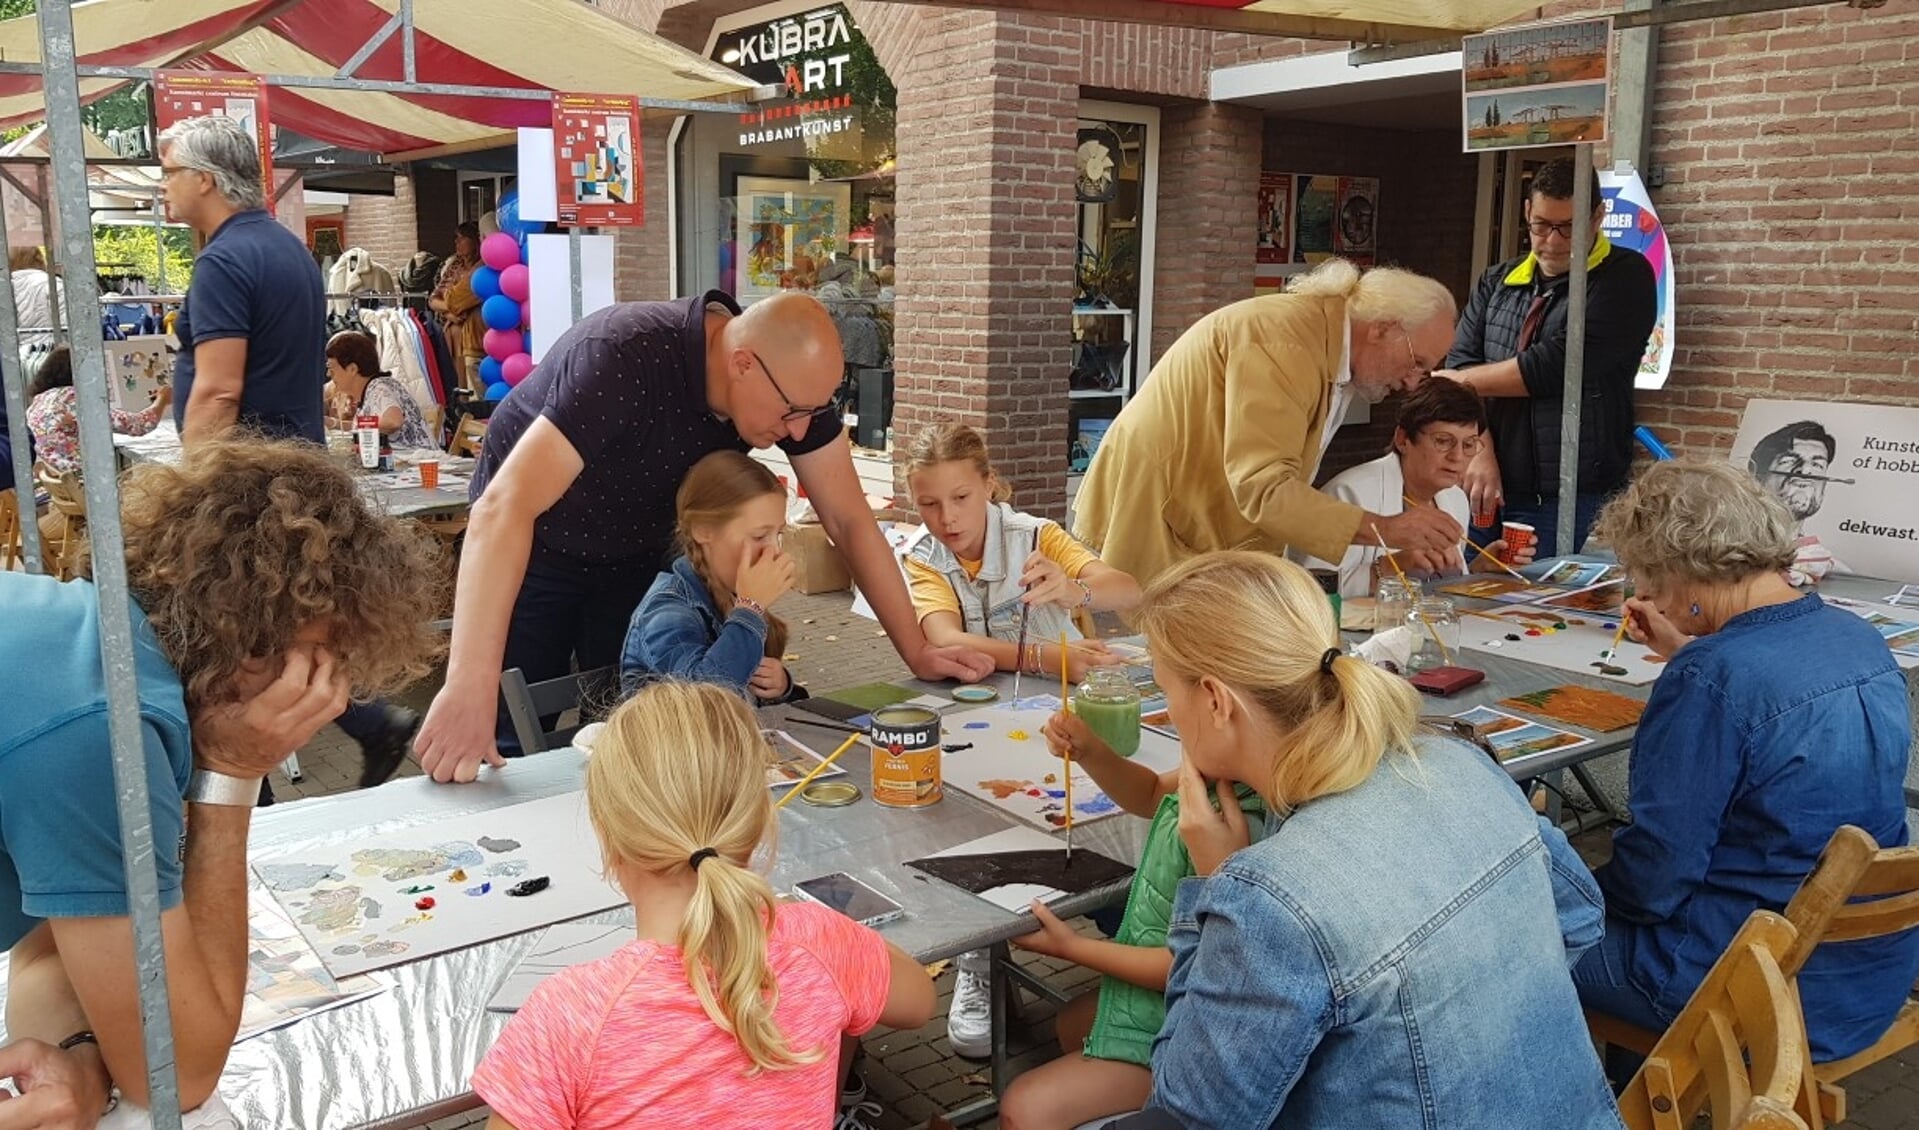 Op 12 september hebben inwoners van Rosmalen - jong en oud - onder begeleiding van enkele kunstenaars van KuBra-Art Galerie gewerkt aan twee schilderijen binnen het community-art project 'Verbinding'.